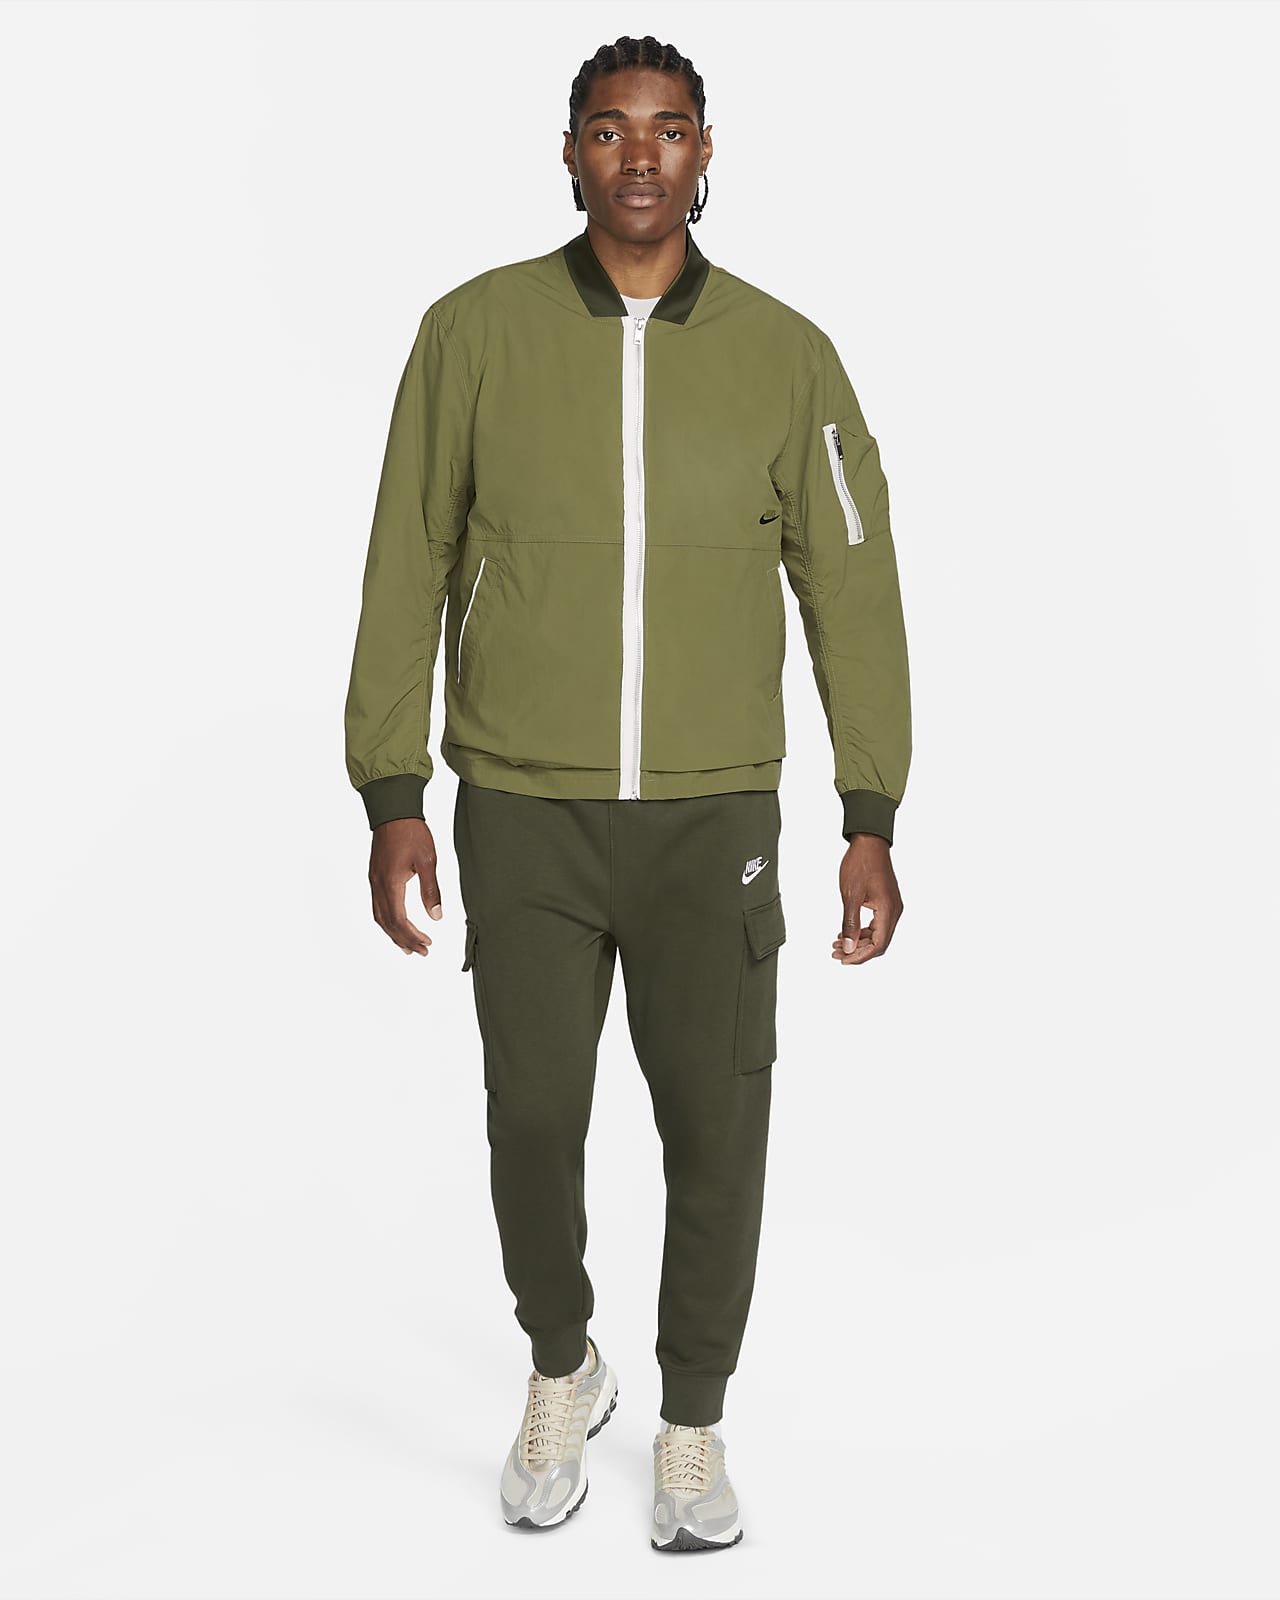 Nike Sportswear Style Essentials Men's Unlined Bomber Jacket. Nike LU